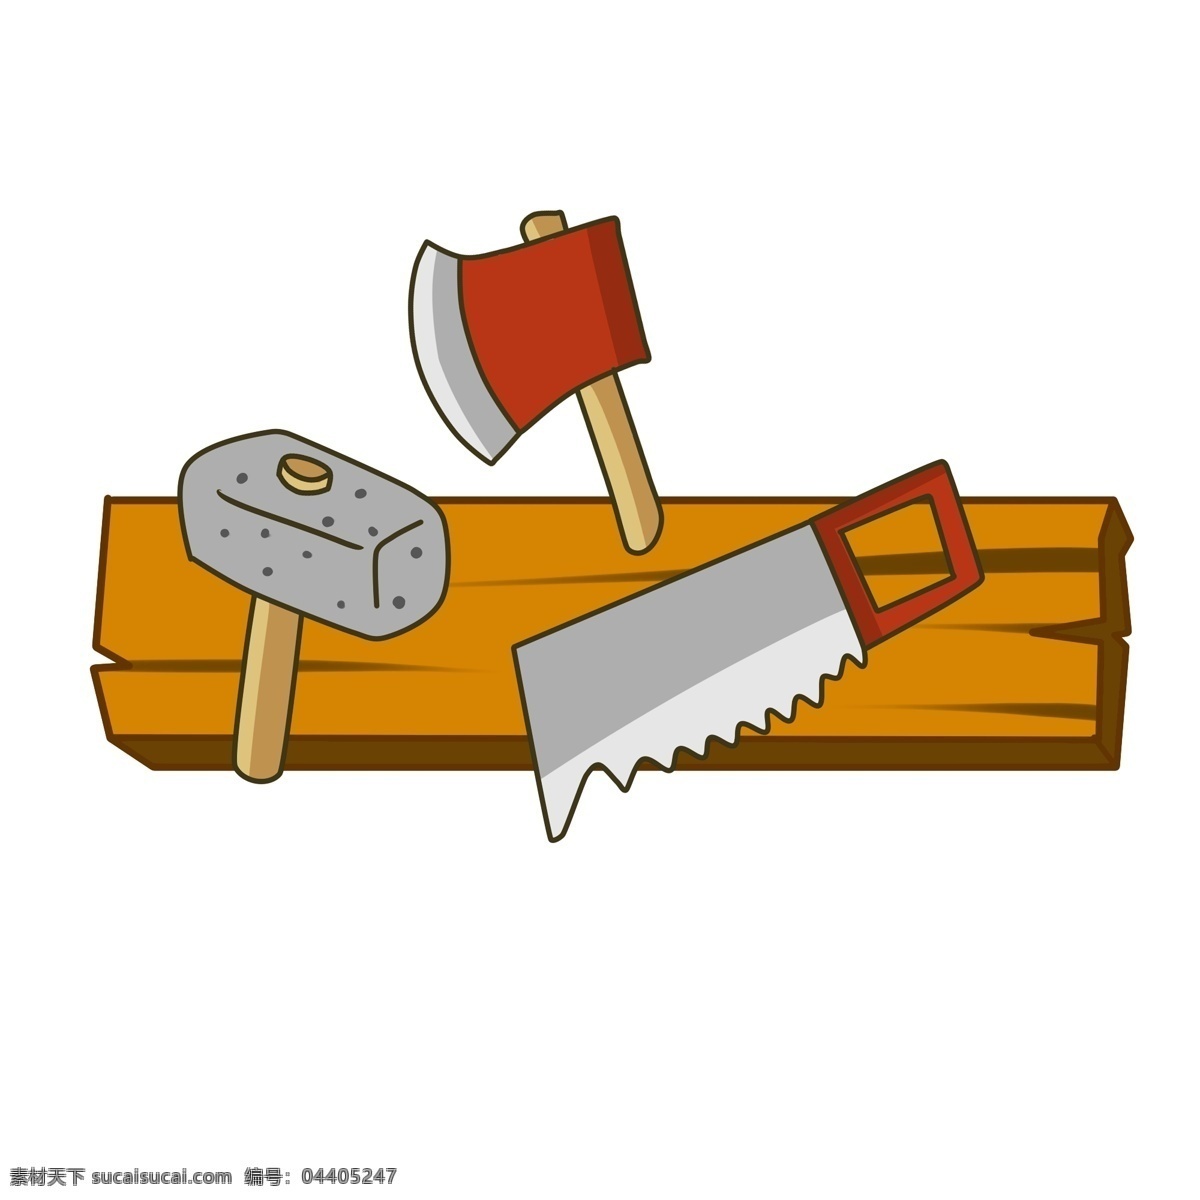 木头 伐木 工具 插画 锤子 锯子 锯齿 板斧 卡通板斧 砍伐 伐木工具 木板 木质 砍伐树木